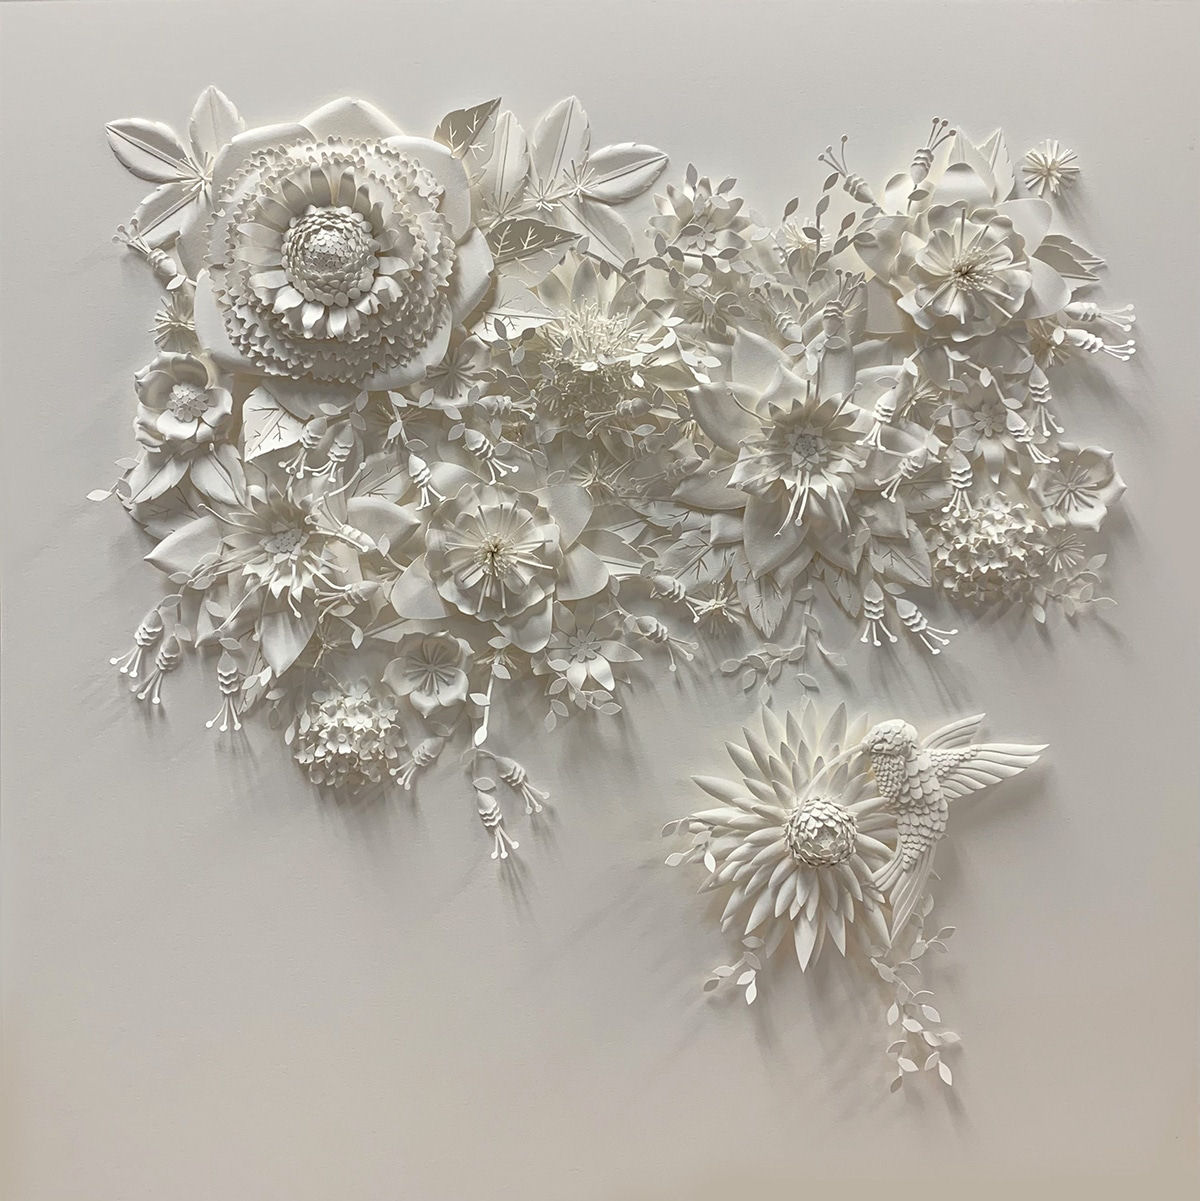 Artista cria 'jardins' exuberantes com flores de papel caprichosamente cortadas 01